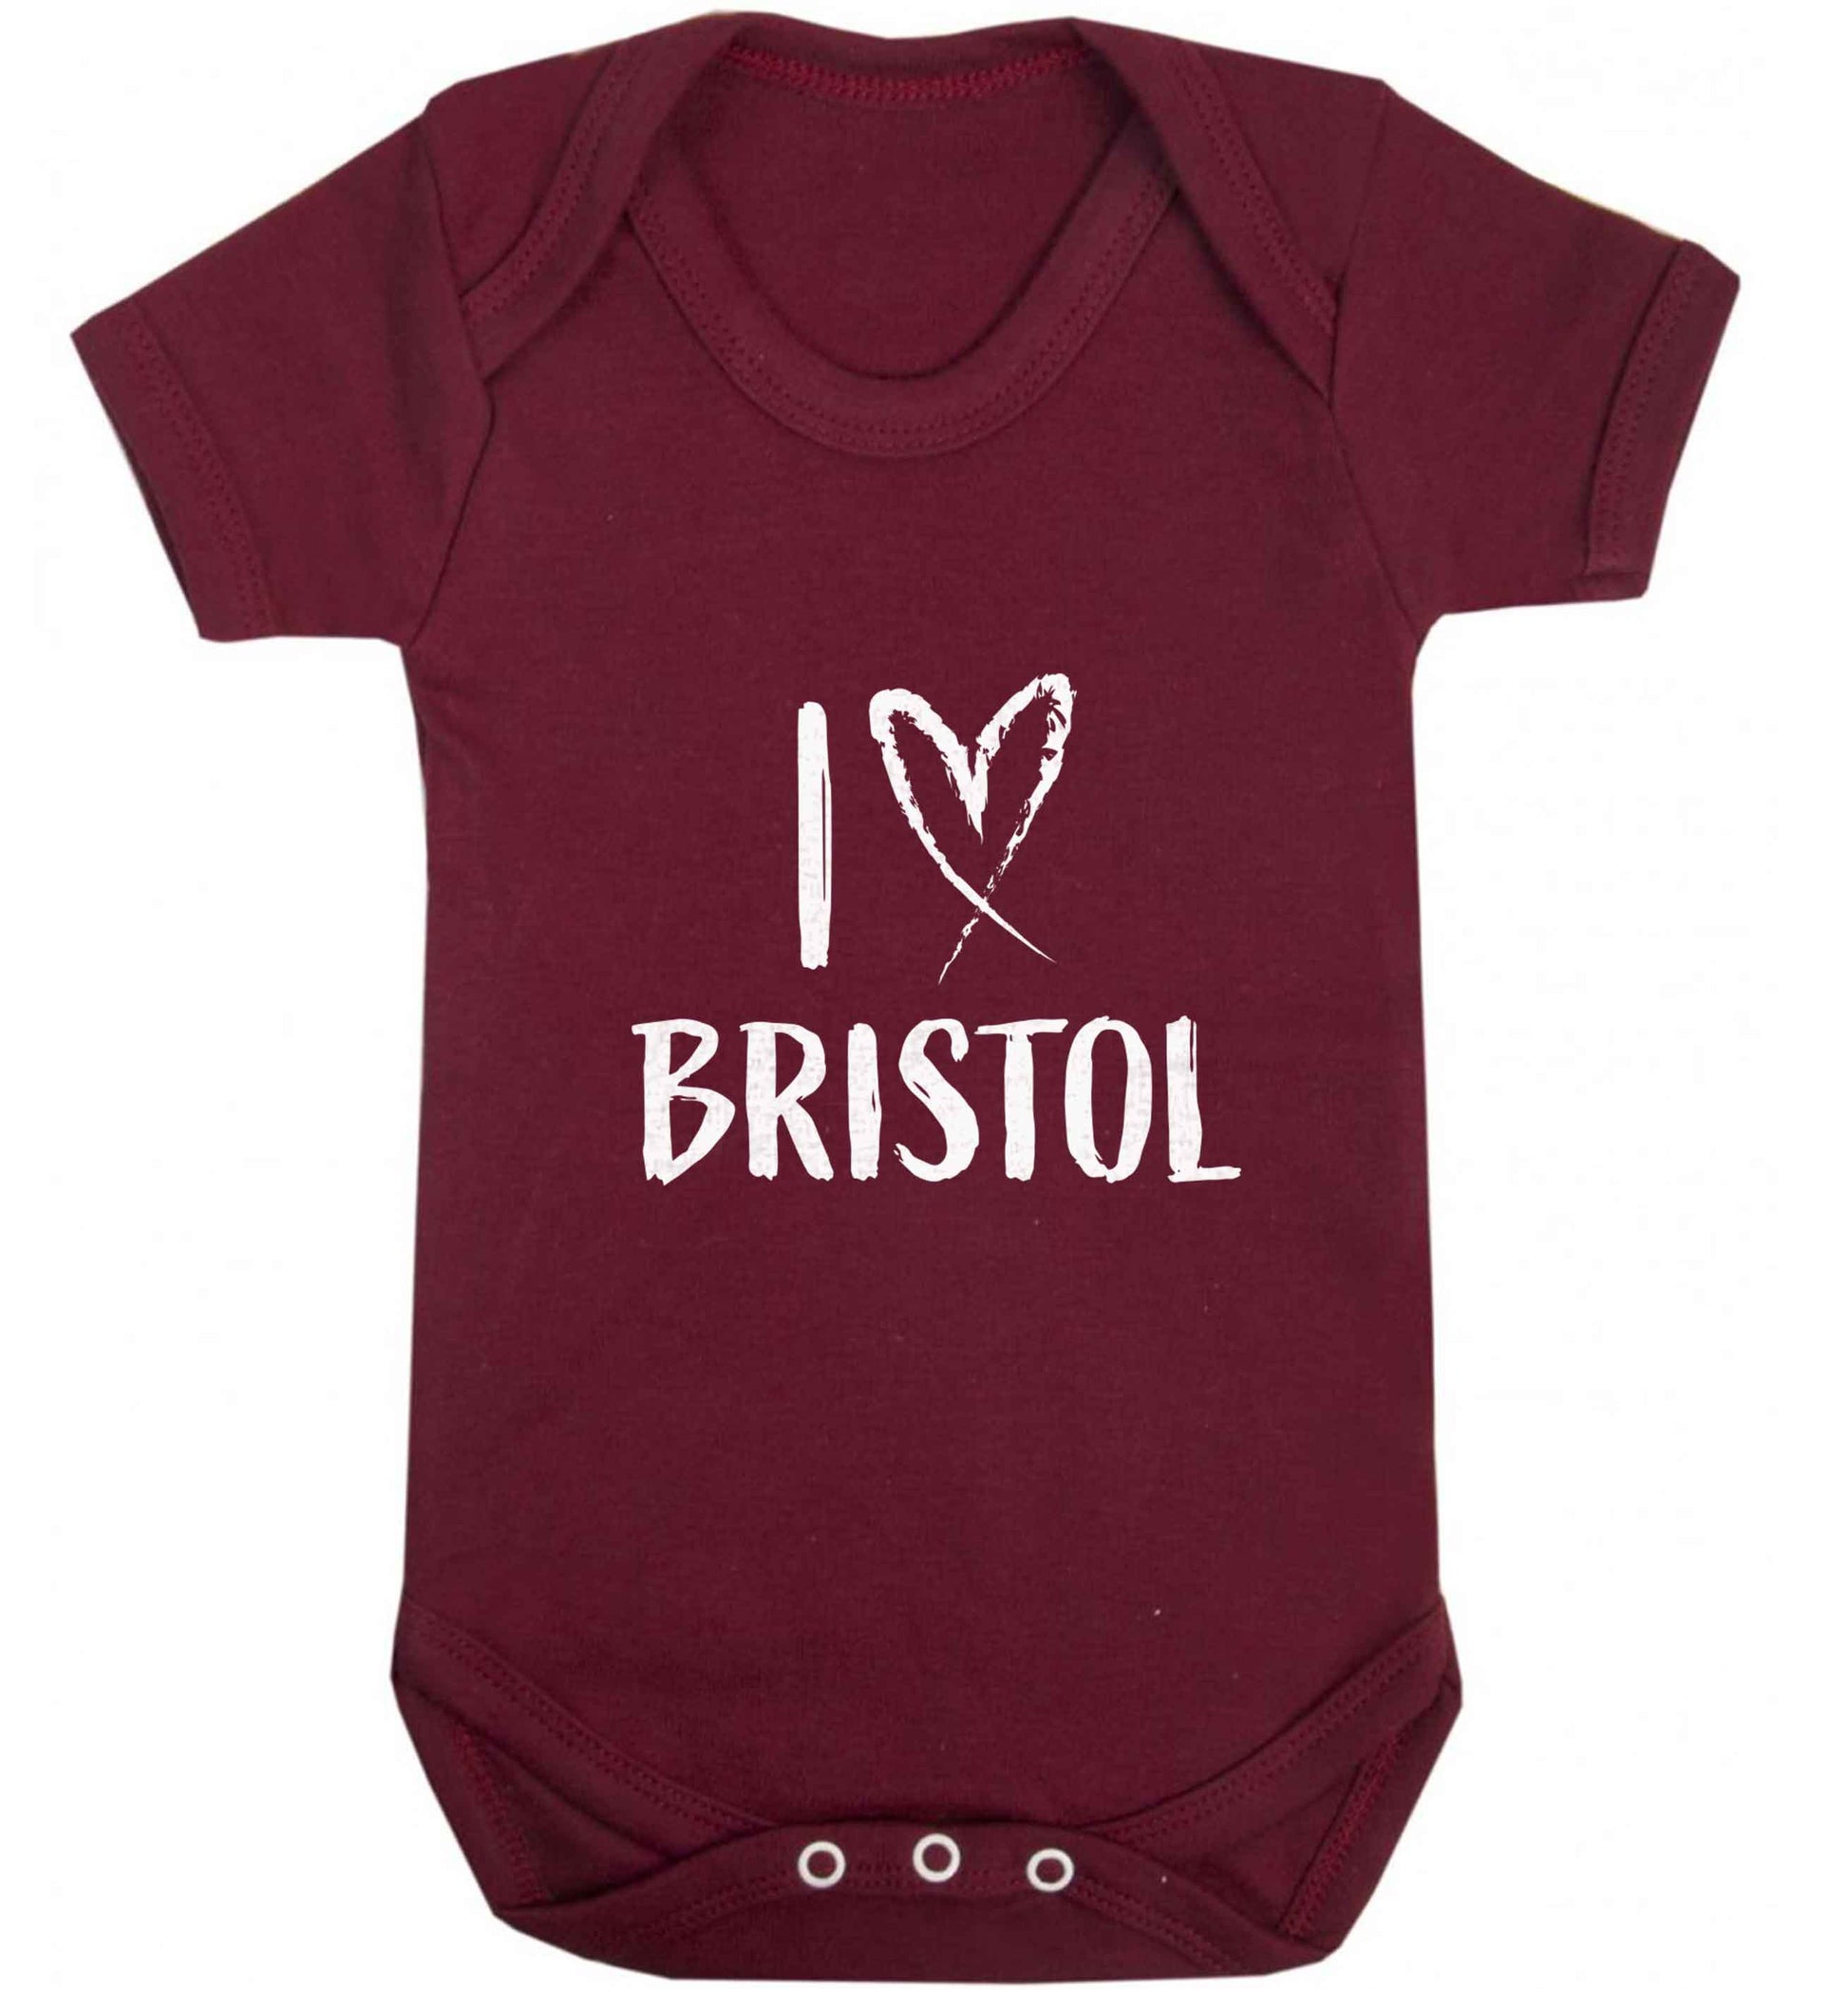 I love Bristol baby vest maroon 18-24 months